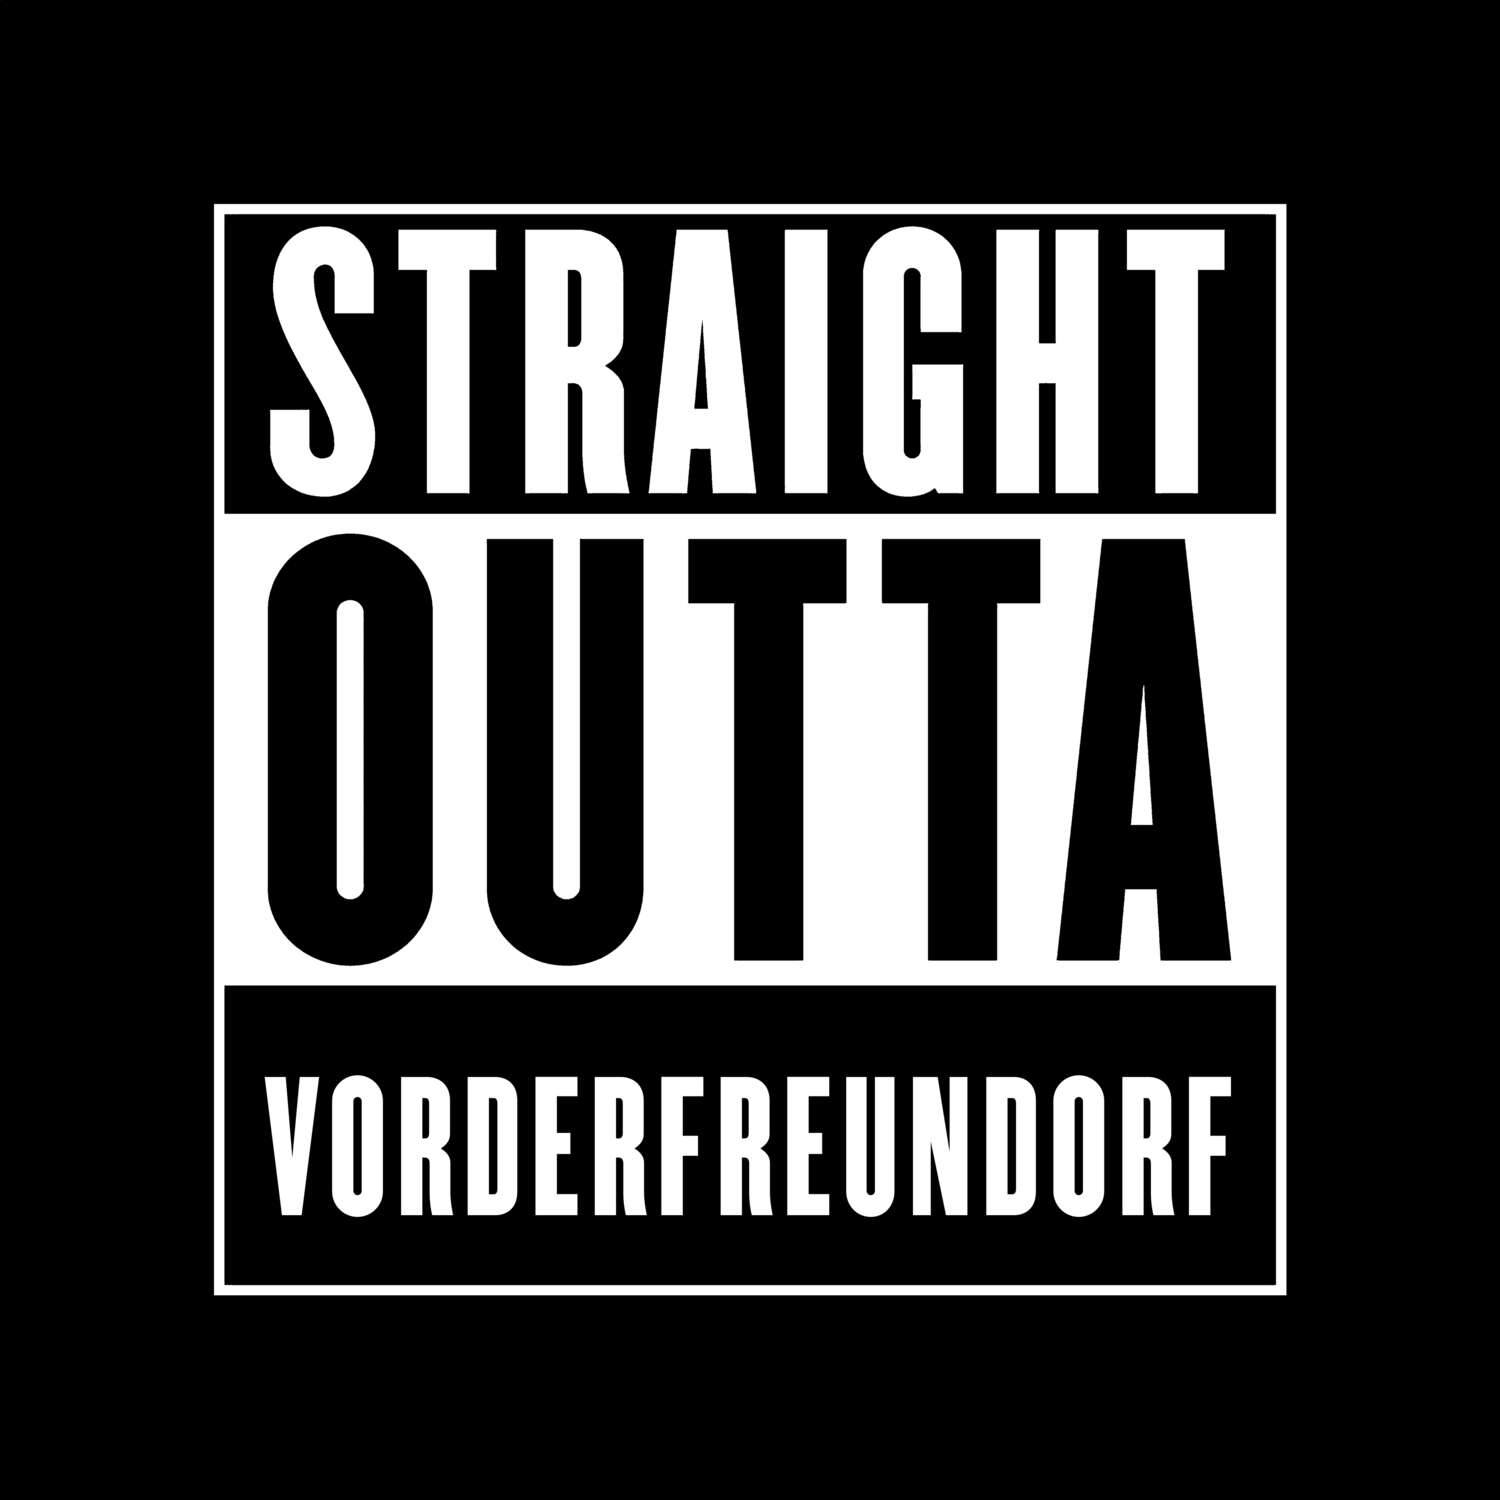 Vorderfreundorf T-Shirt »Straight Outta«